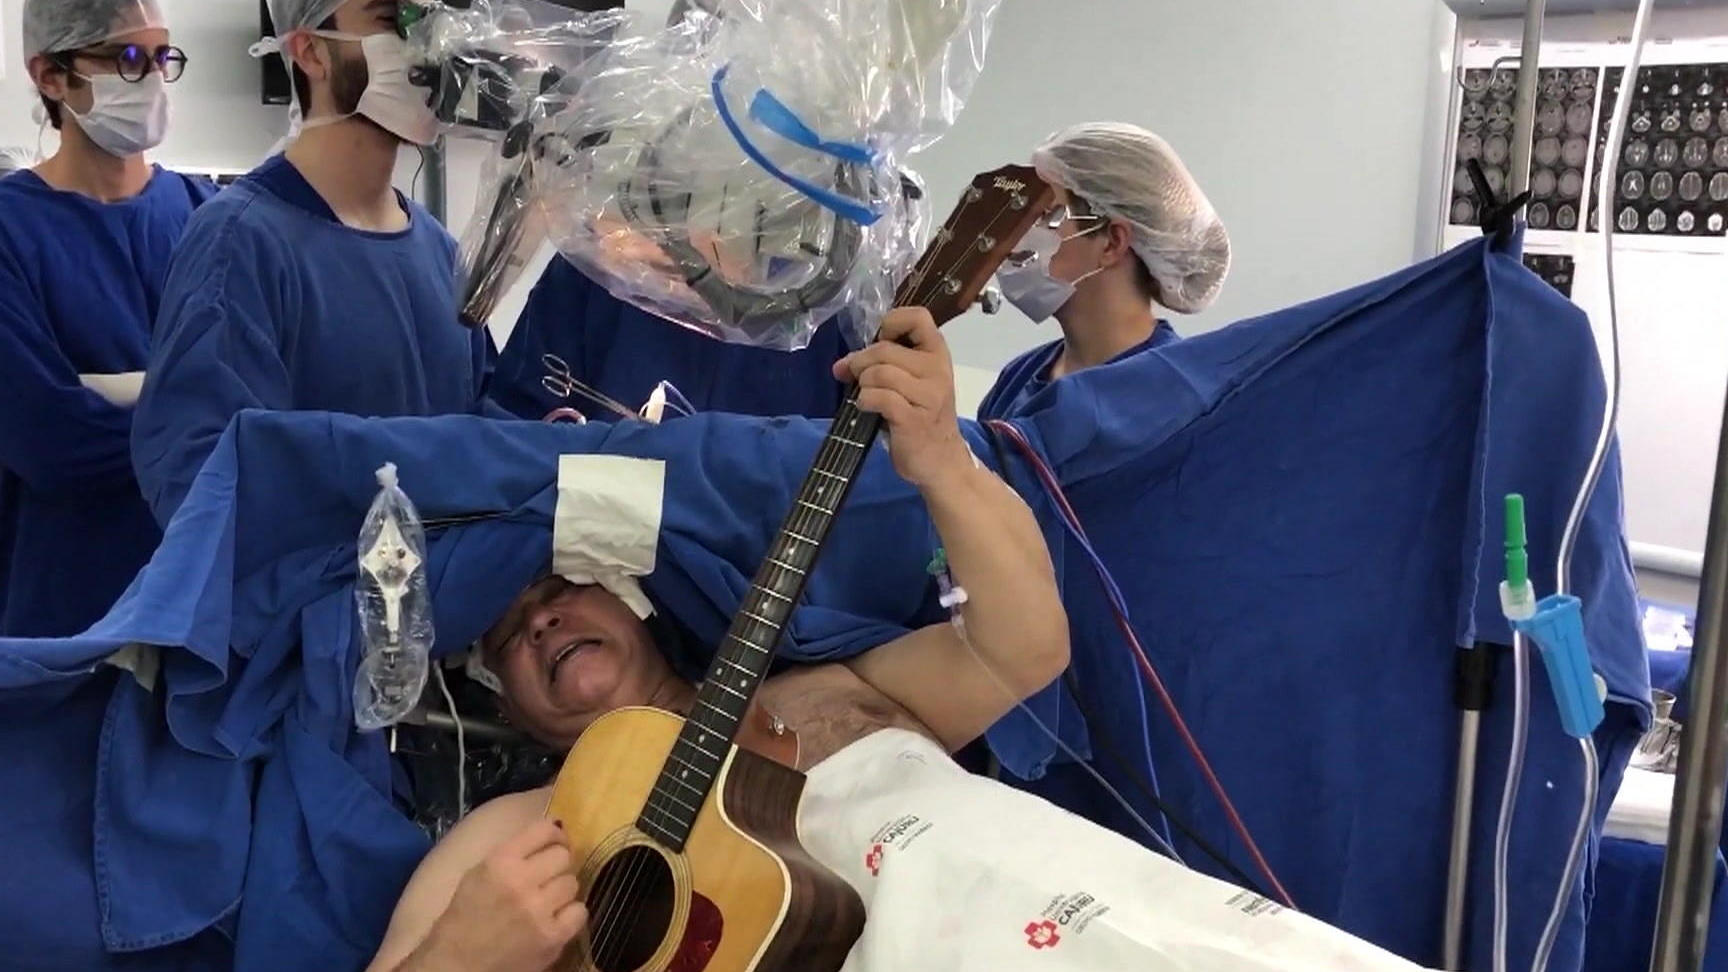 Un hombre toca la guitarra mientras los médicos extirpan un tumor cerebral ¡Concierto en el quirófano!